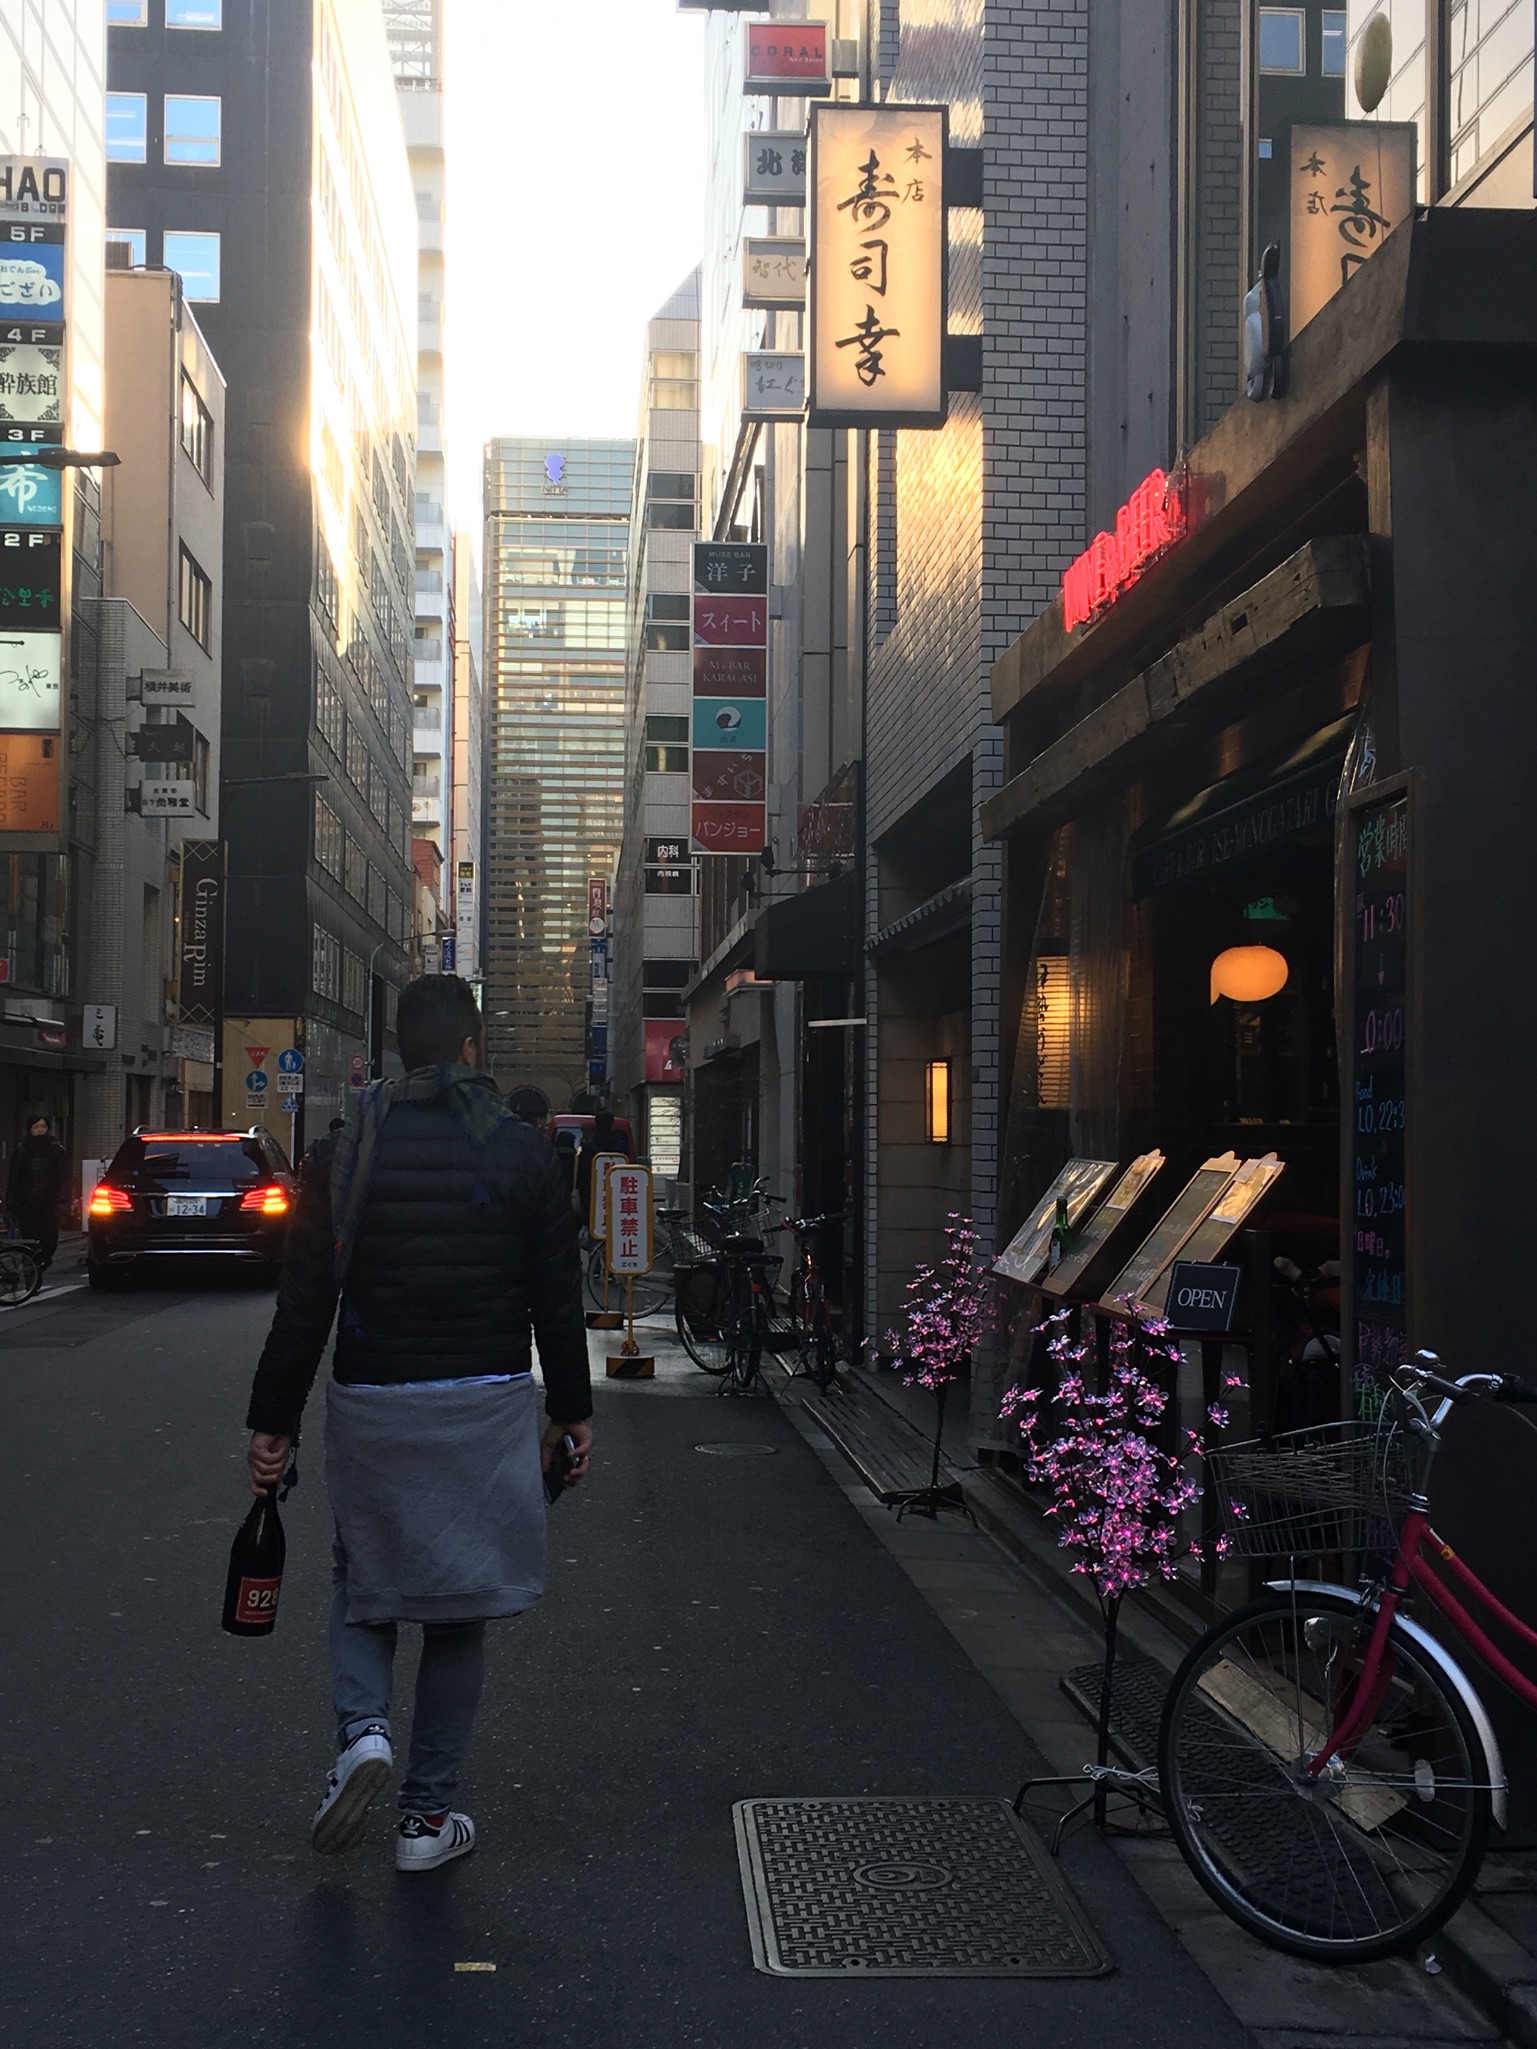 Tokyo, Japan, Enioottaviani.it